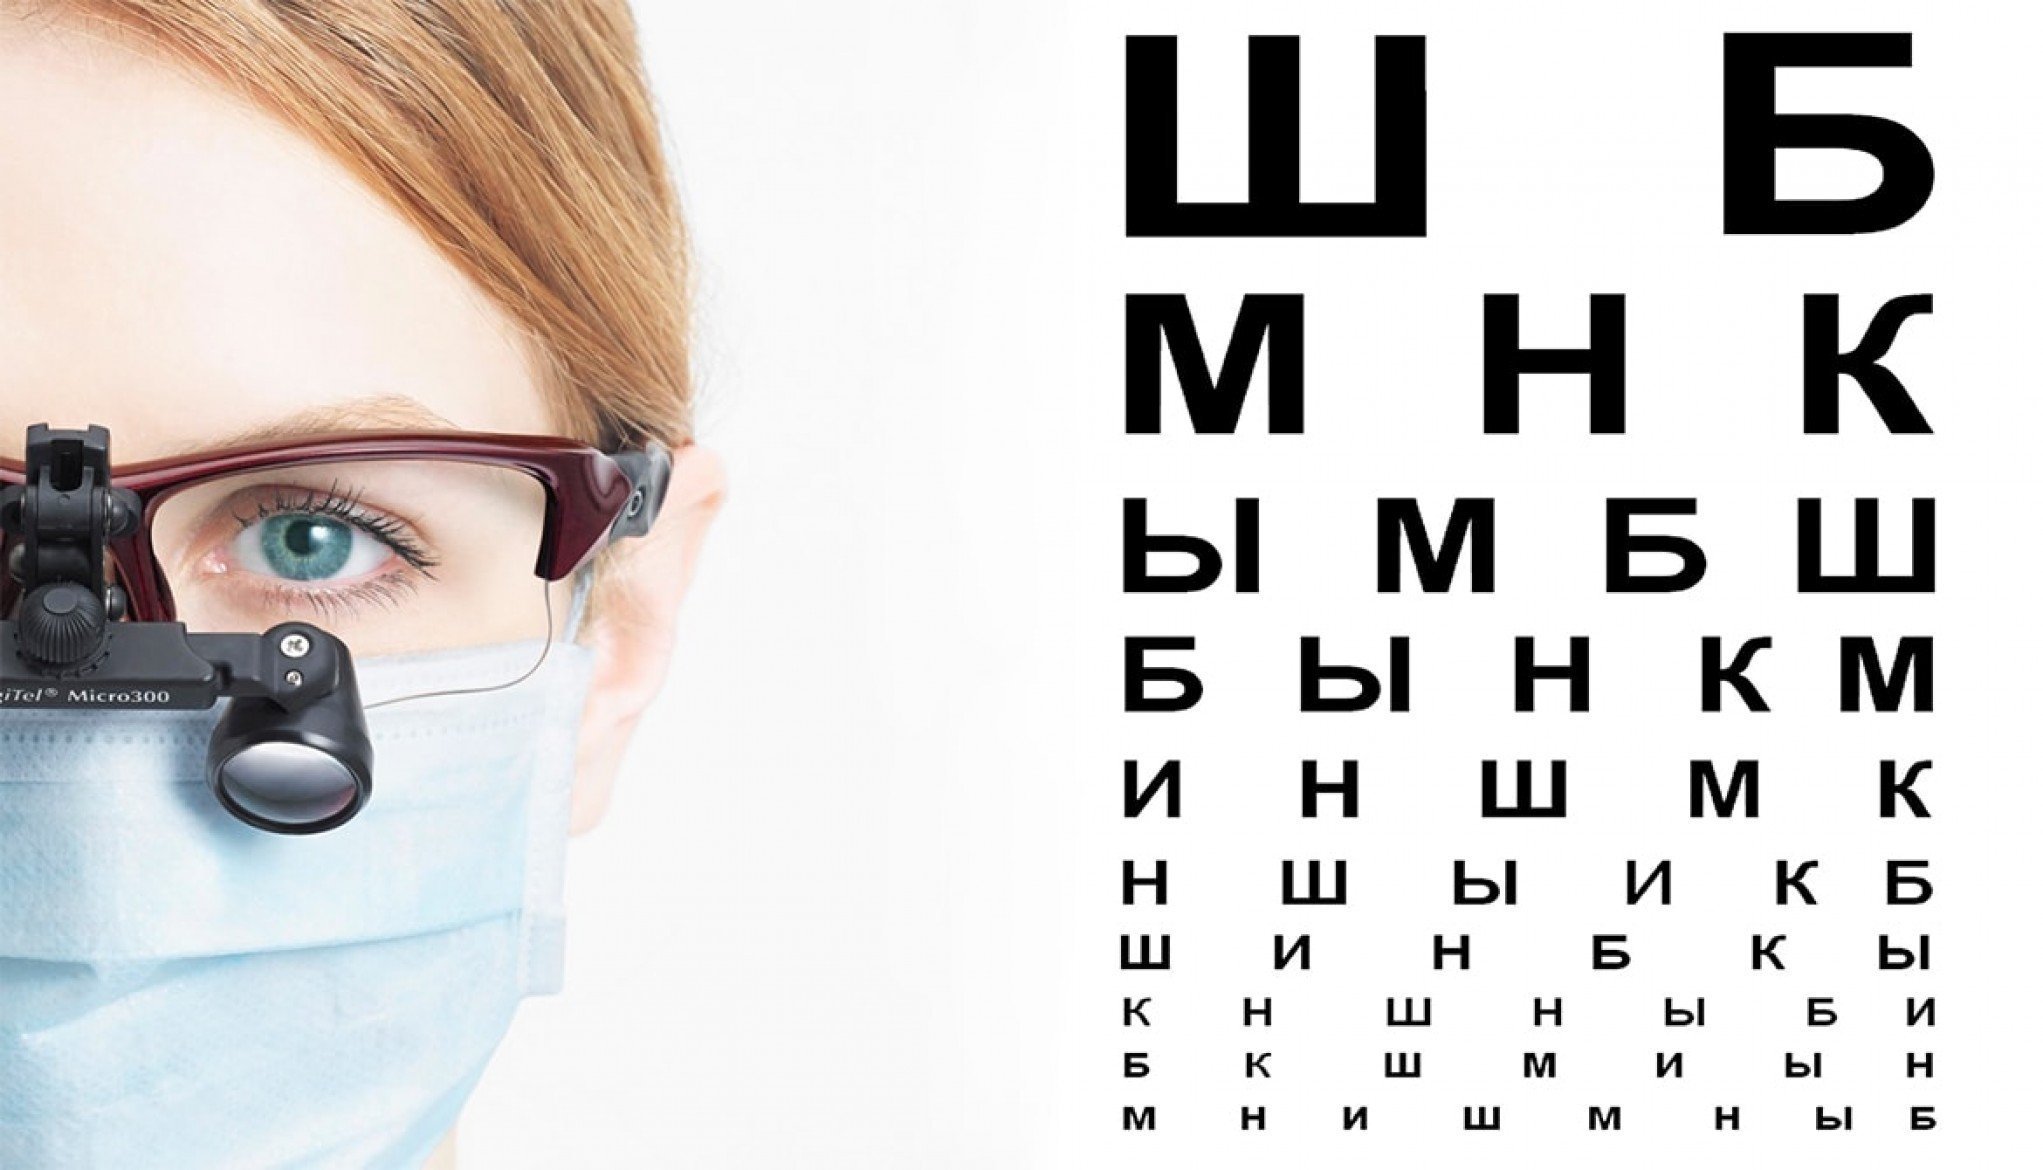 Аир зрение. Очки офтальмолога. Очки для глаз для зрения. Очки офтальмологические для проверки зрения. Человек у офтальмолога.